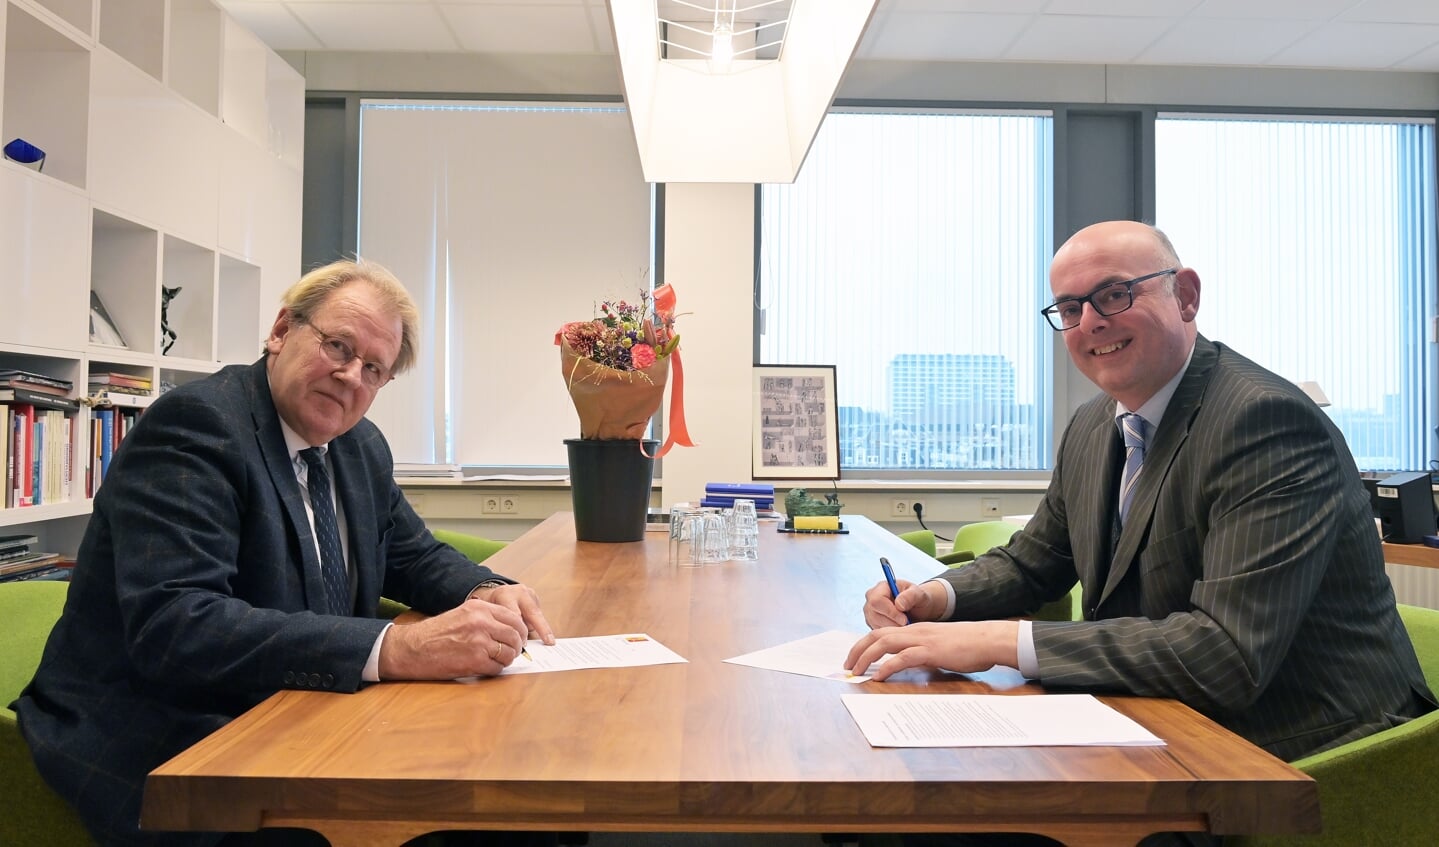 Burgemeester Martijn Vroom (links) herbenoemd voor tweede ambtstermijn Krimpen aan den IJssel.